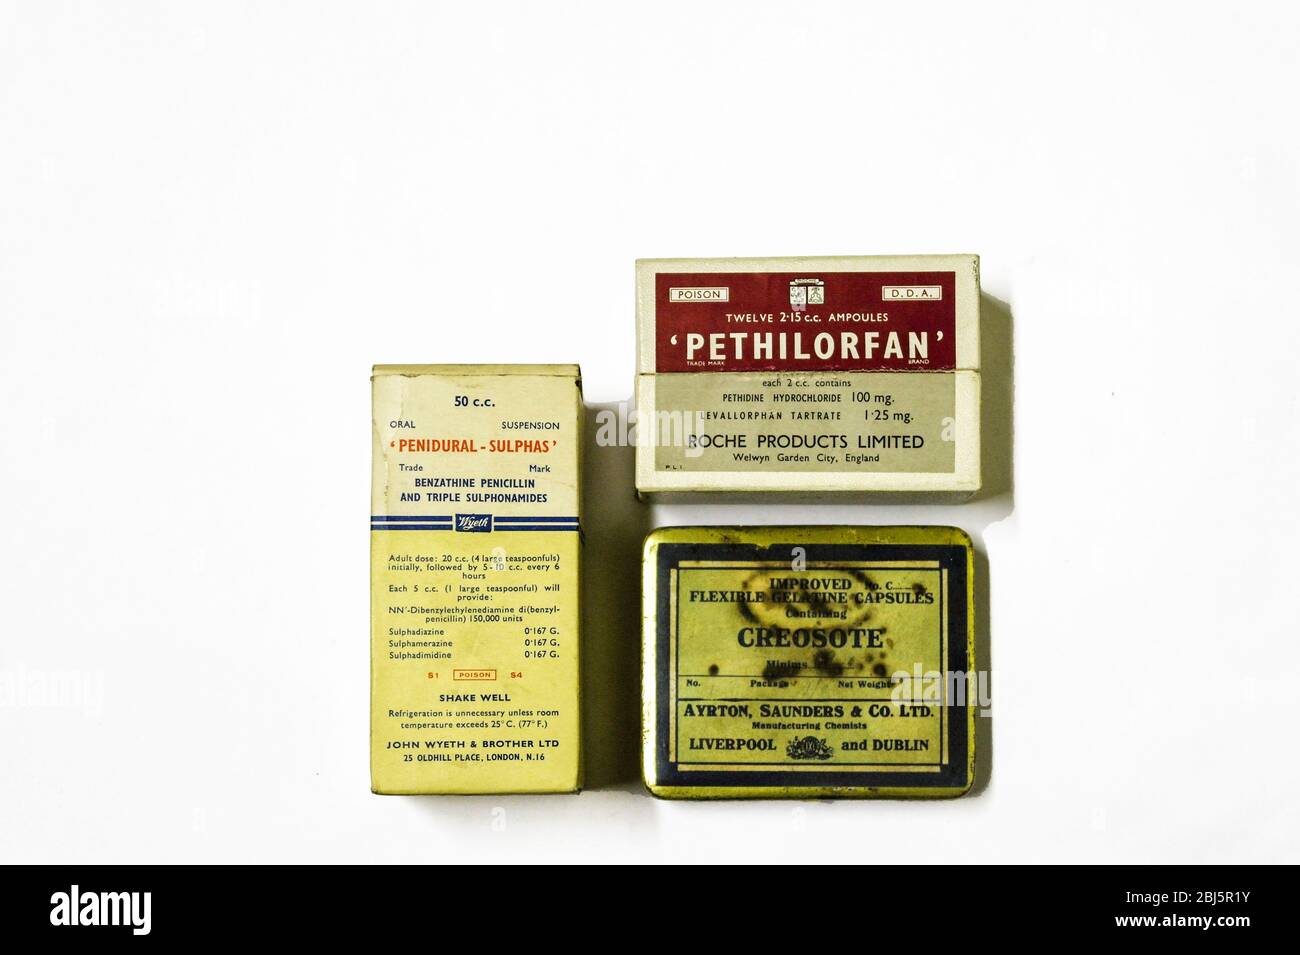 Pacchetti vecchi di penidural Sulphas penicillina, antagonista oppioide di Pethilorfan è marcato veleno e un pacchetto di capsule di gelatina. Foto Stock